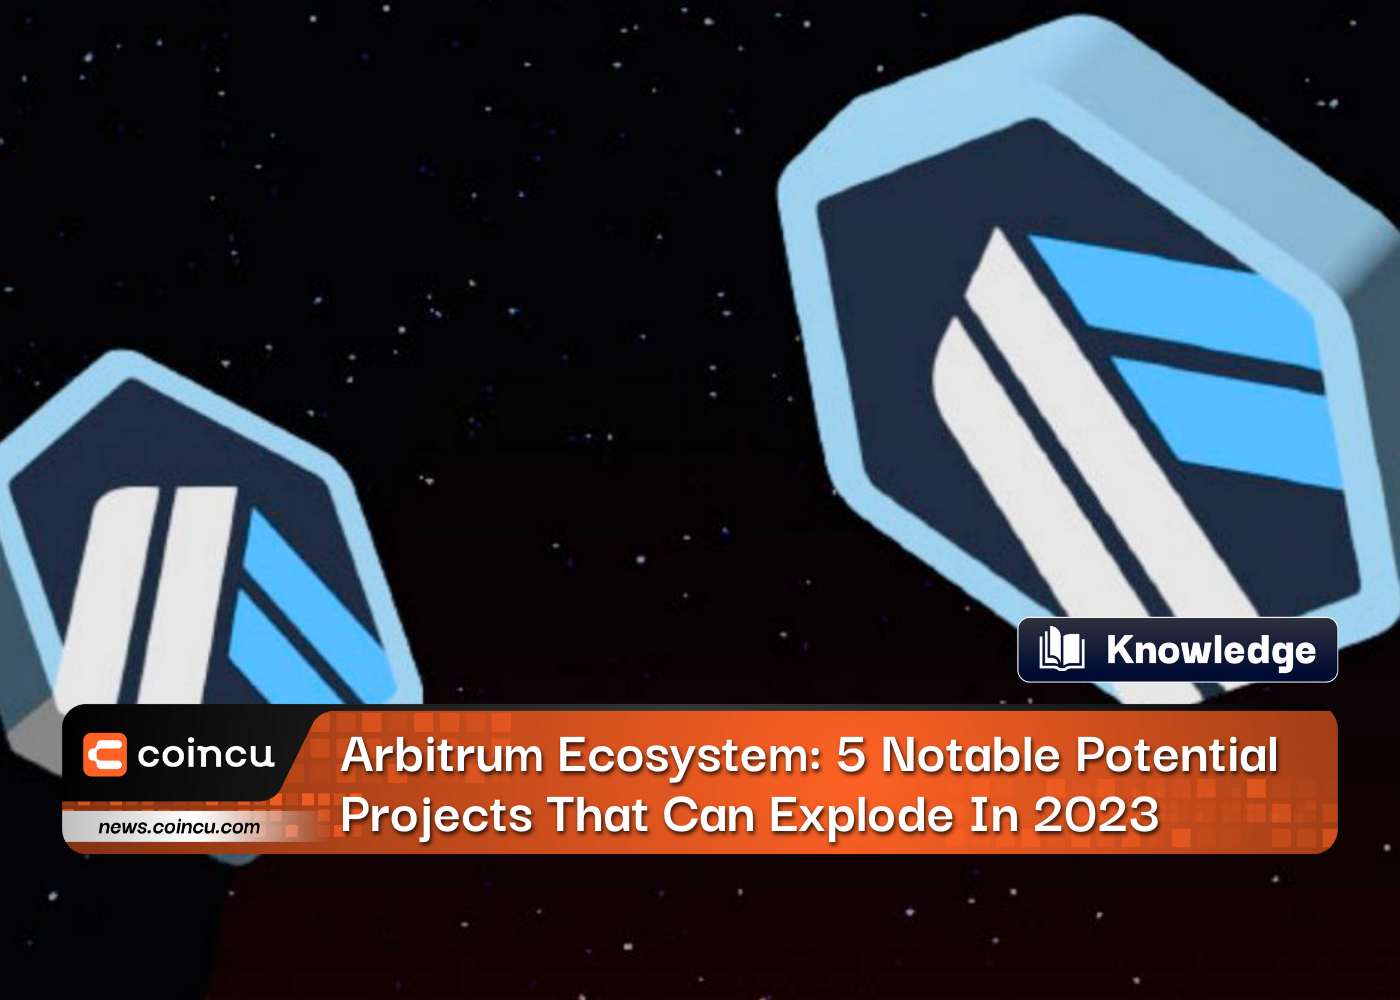 Ecosistema Arbitrum: Los 5 principales proyectos potenciales notables que pueden explotar en 2023